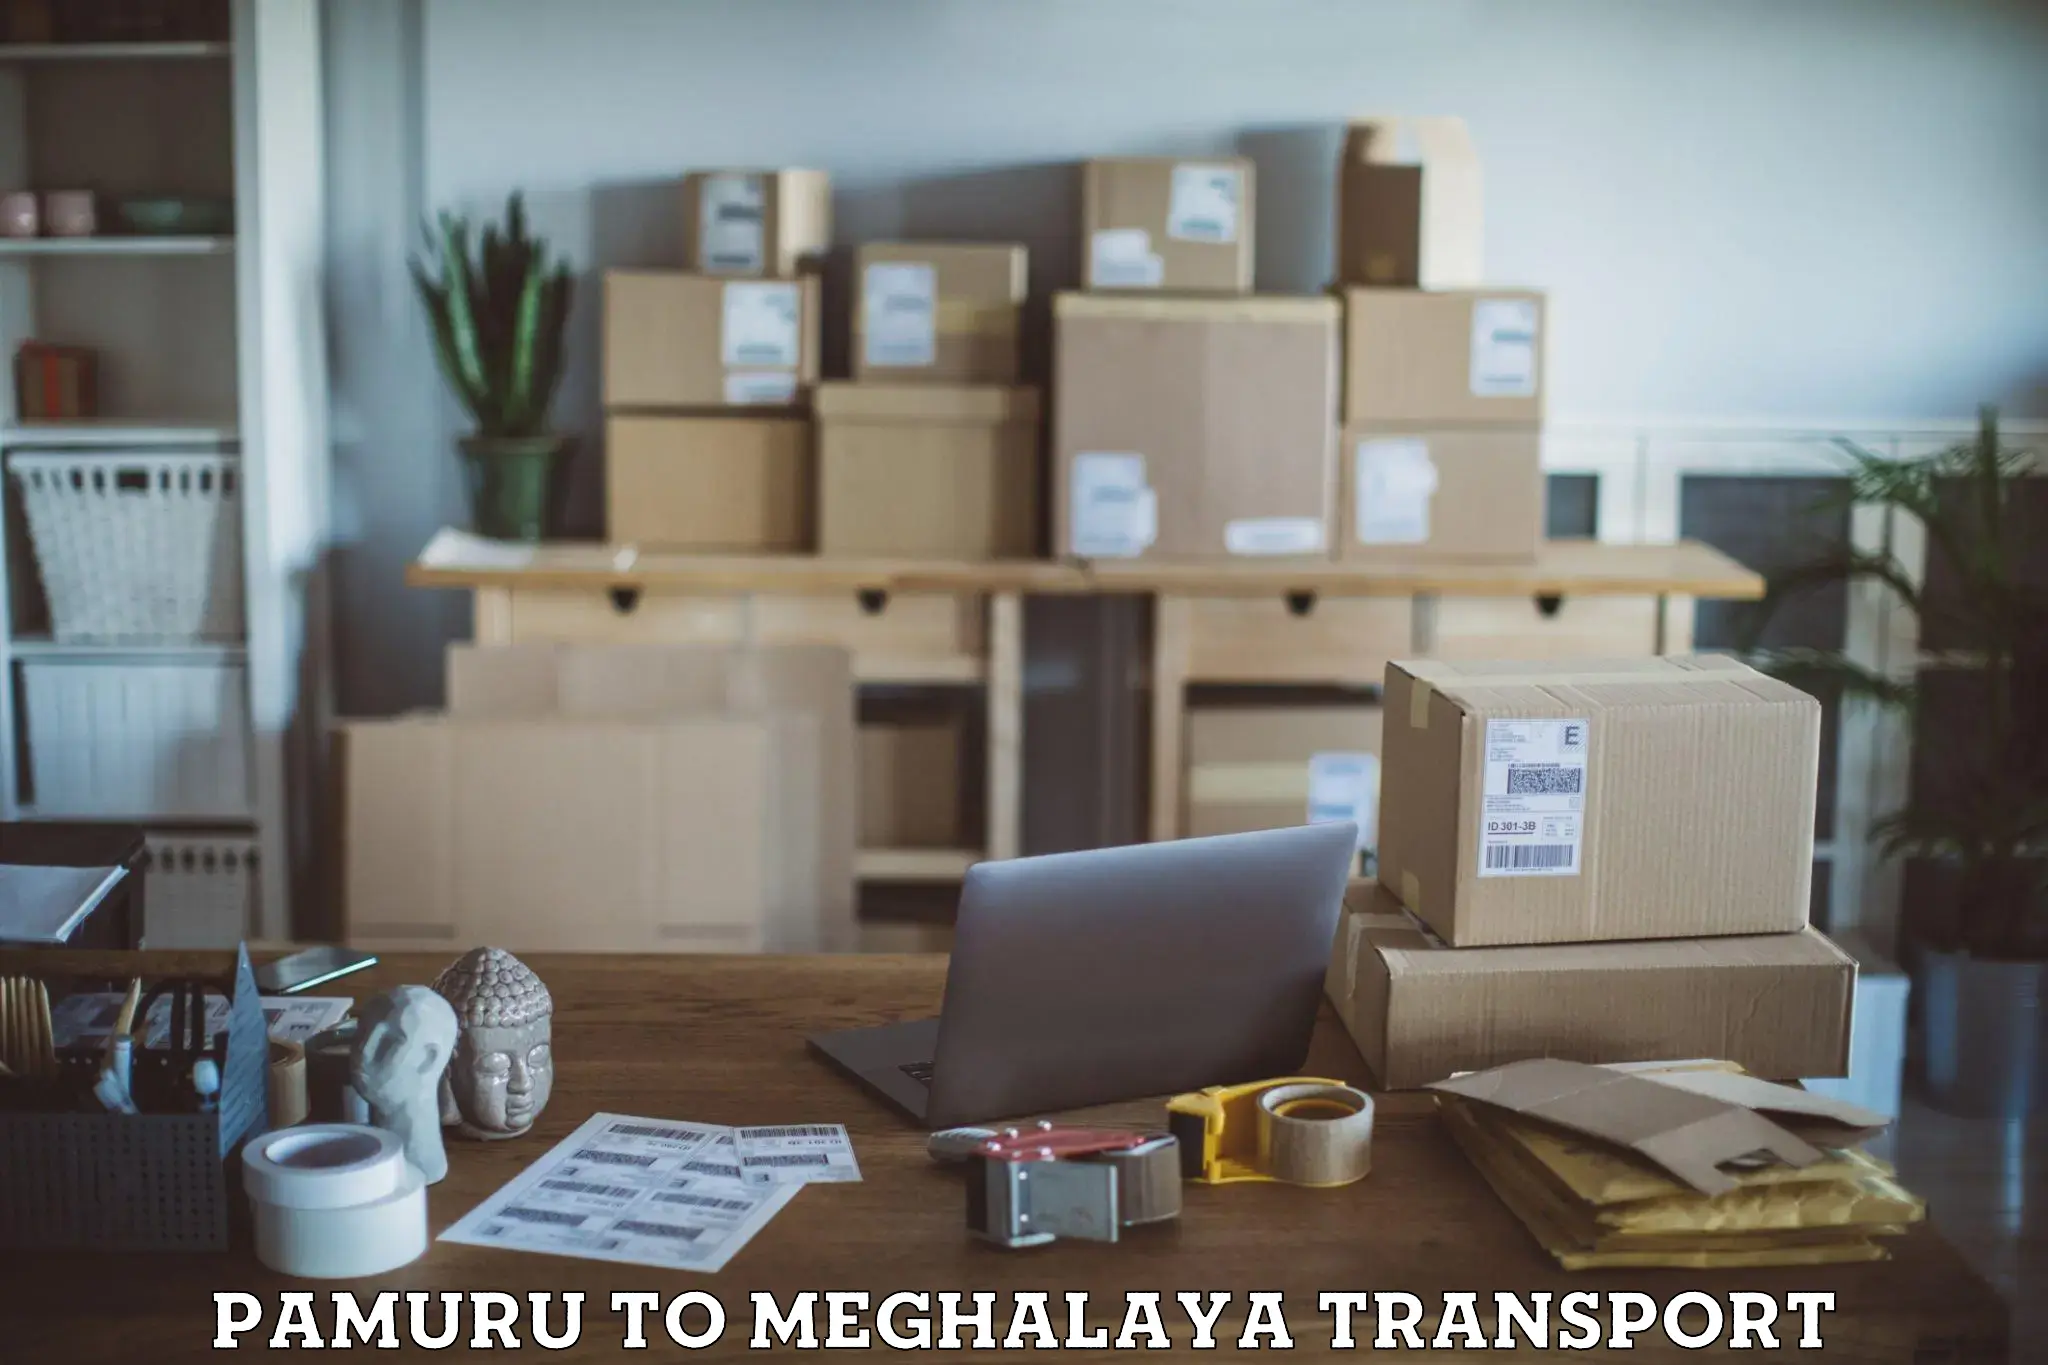 Parcel transport services Pamuru to Meghalaya